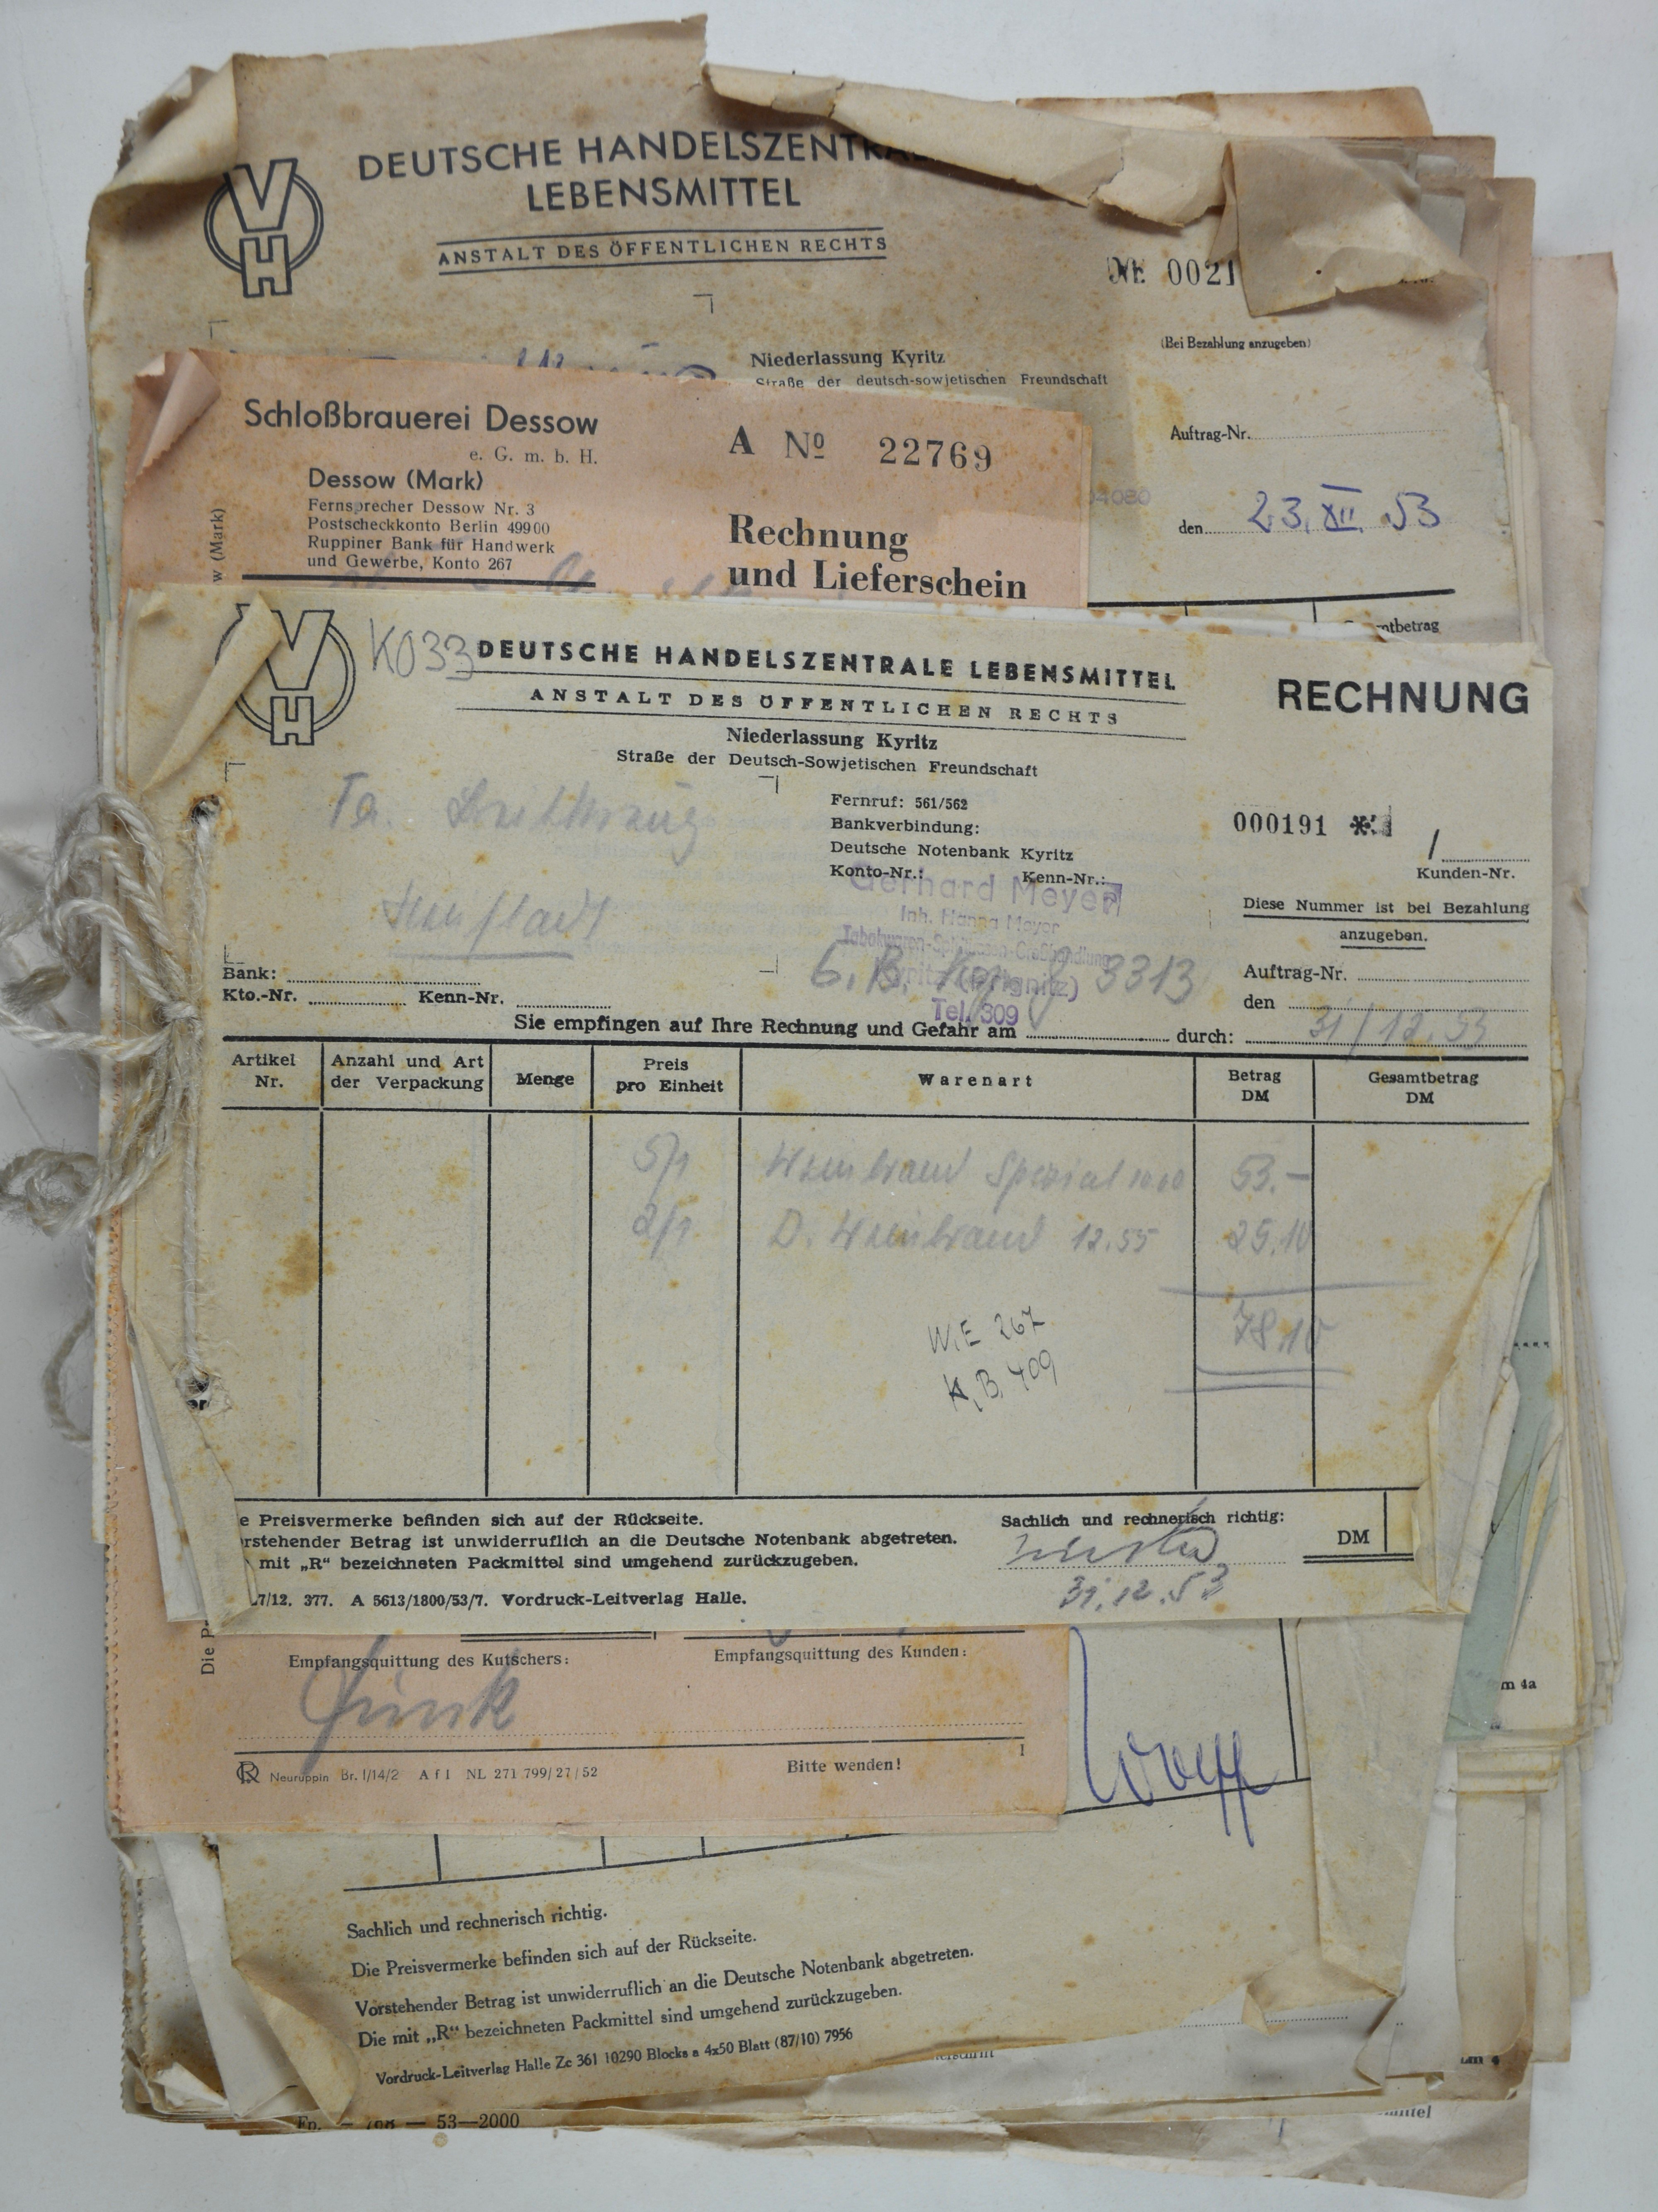 Rechnungen für Wilhelm und Else Breitkreuz aus dem Jahr 1953 (DDR Geschichtsmuseum im Dokumentationszentrum Perleberg CC BY-SA)